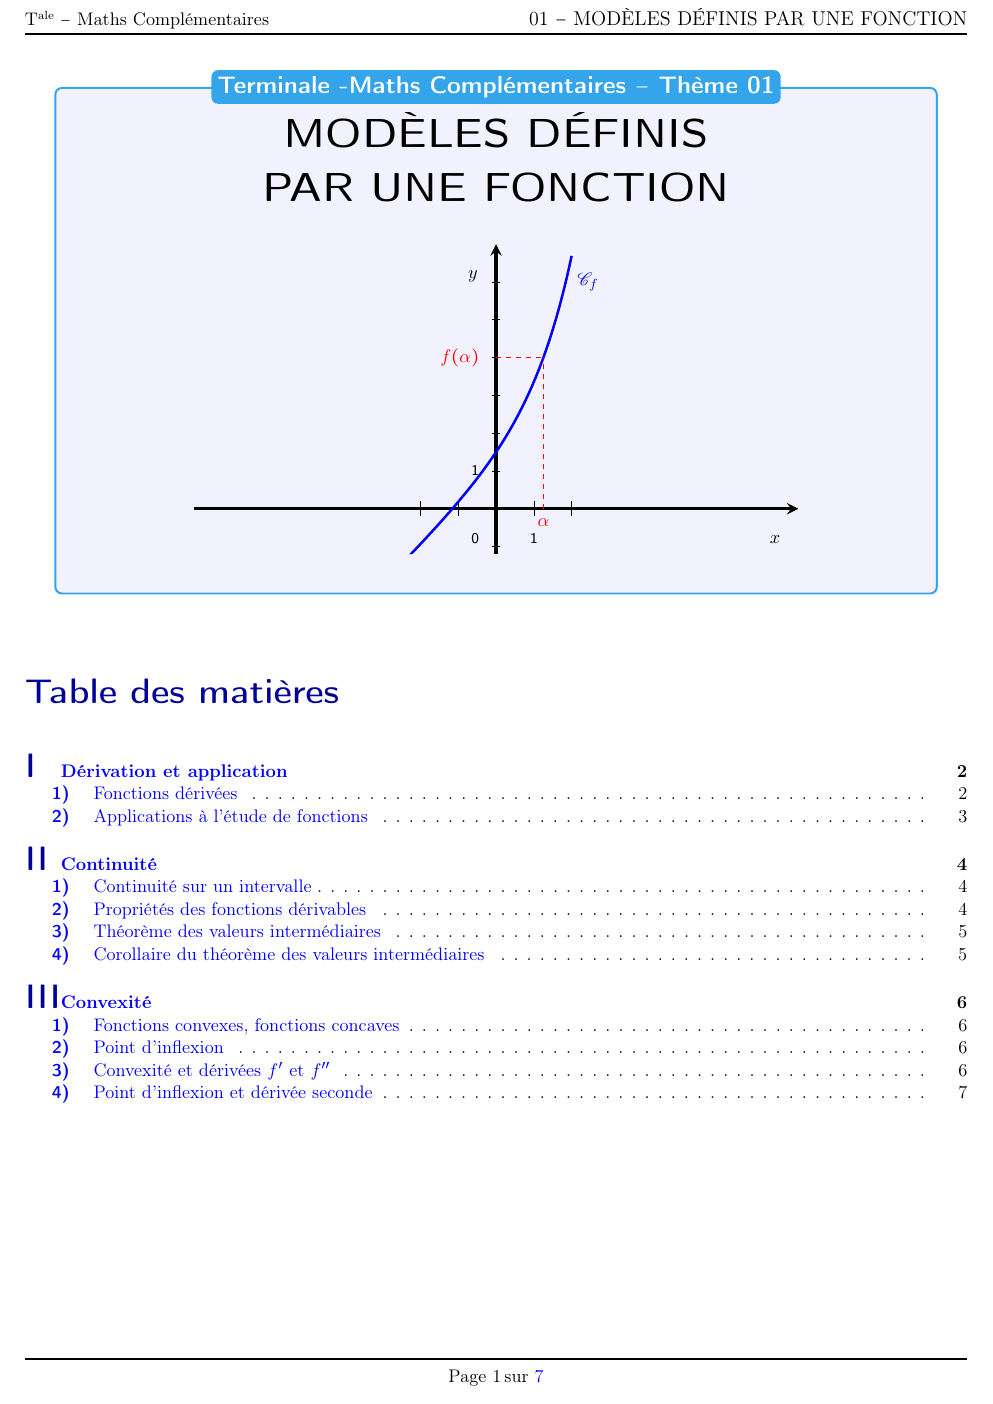 Prévisualisation du document Chapitre 1 cours modèle définis par une fonction math